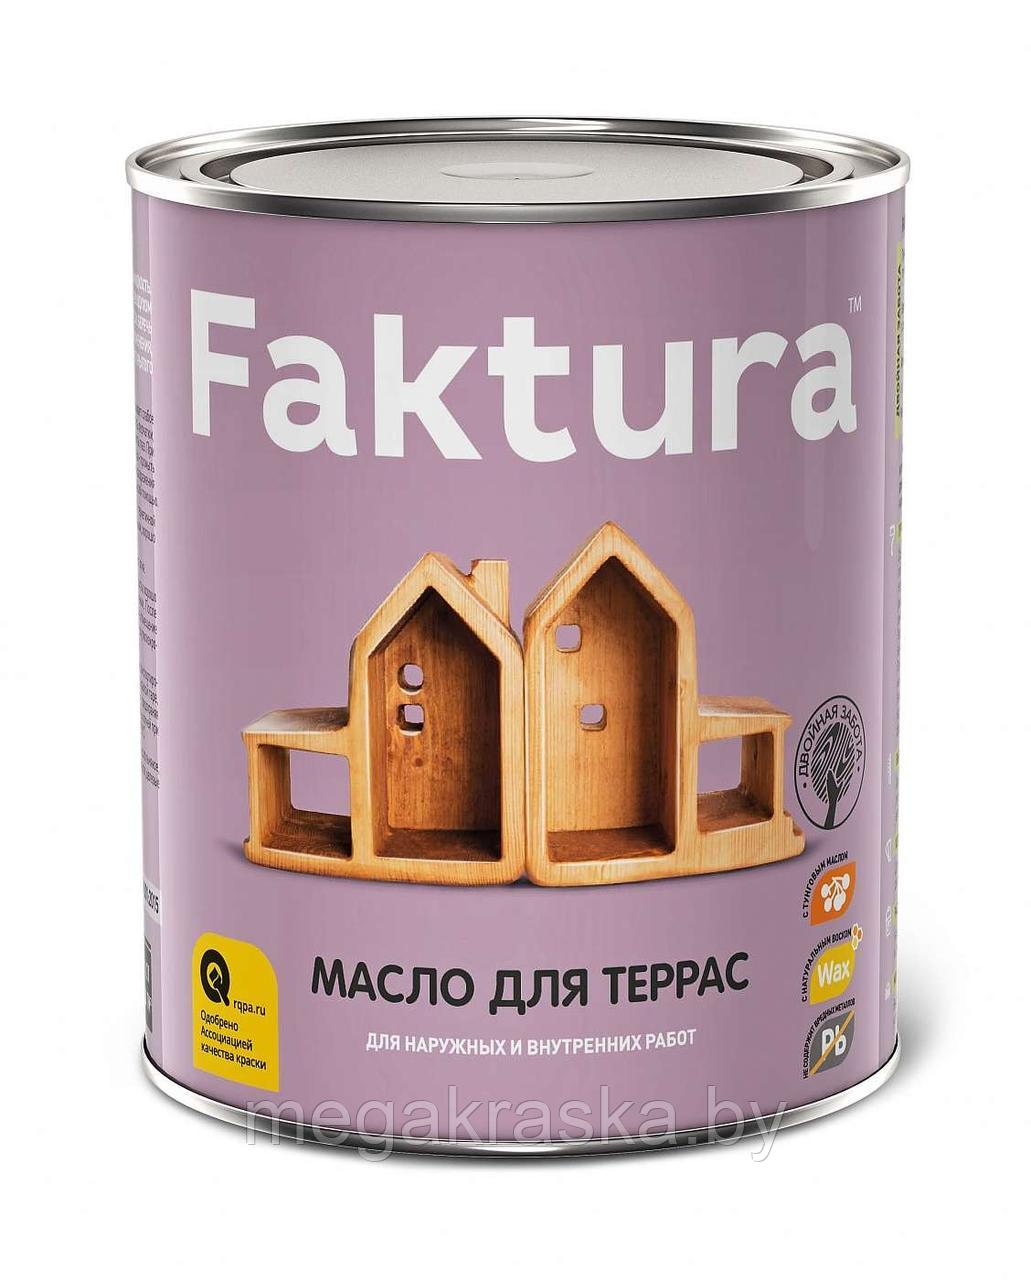 Масло для террас "faktura" бесцветное+цветное - 0,7л.